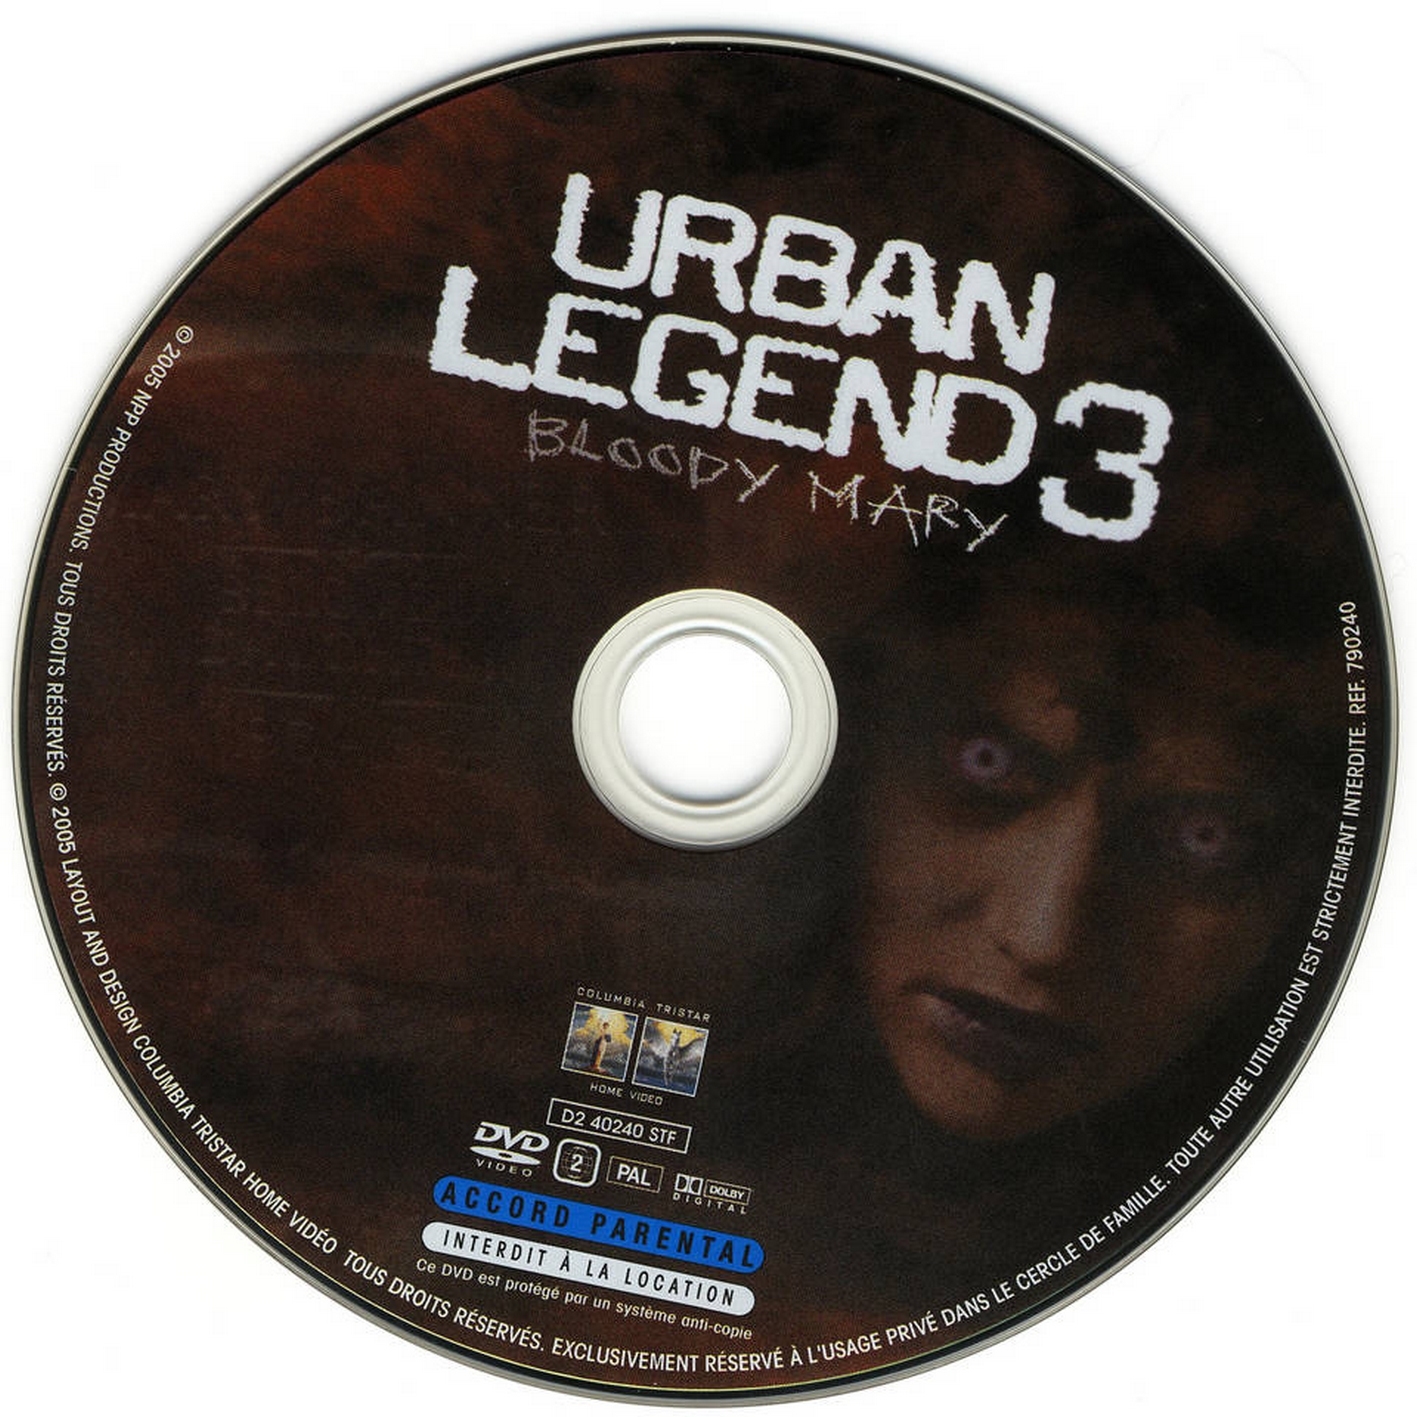 Urban legend 3